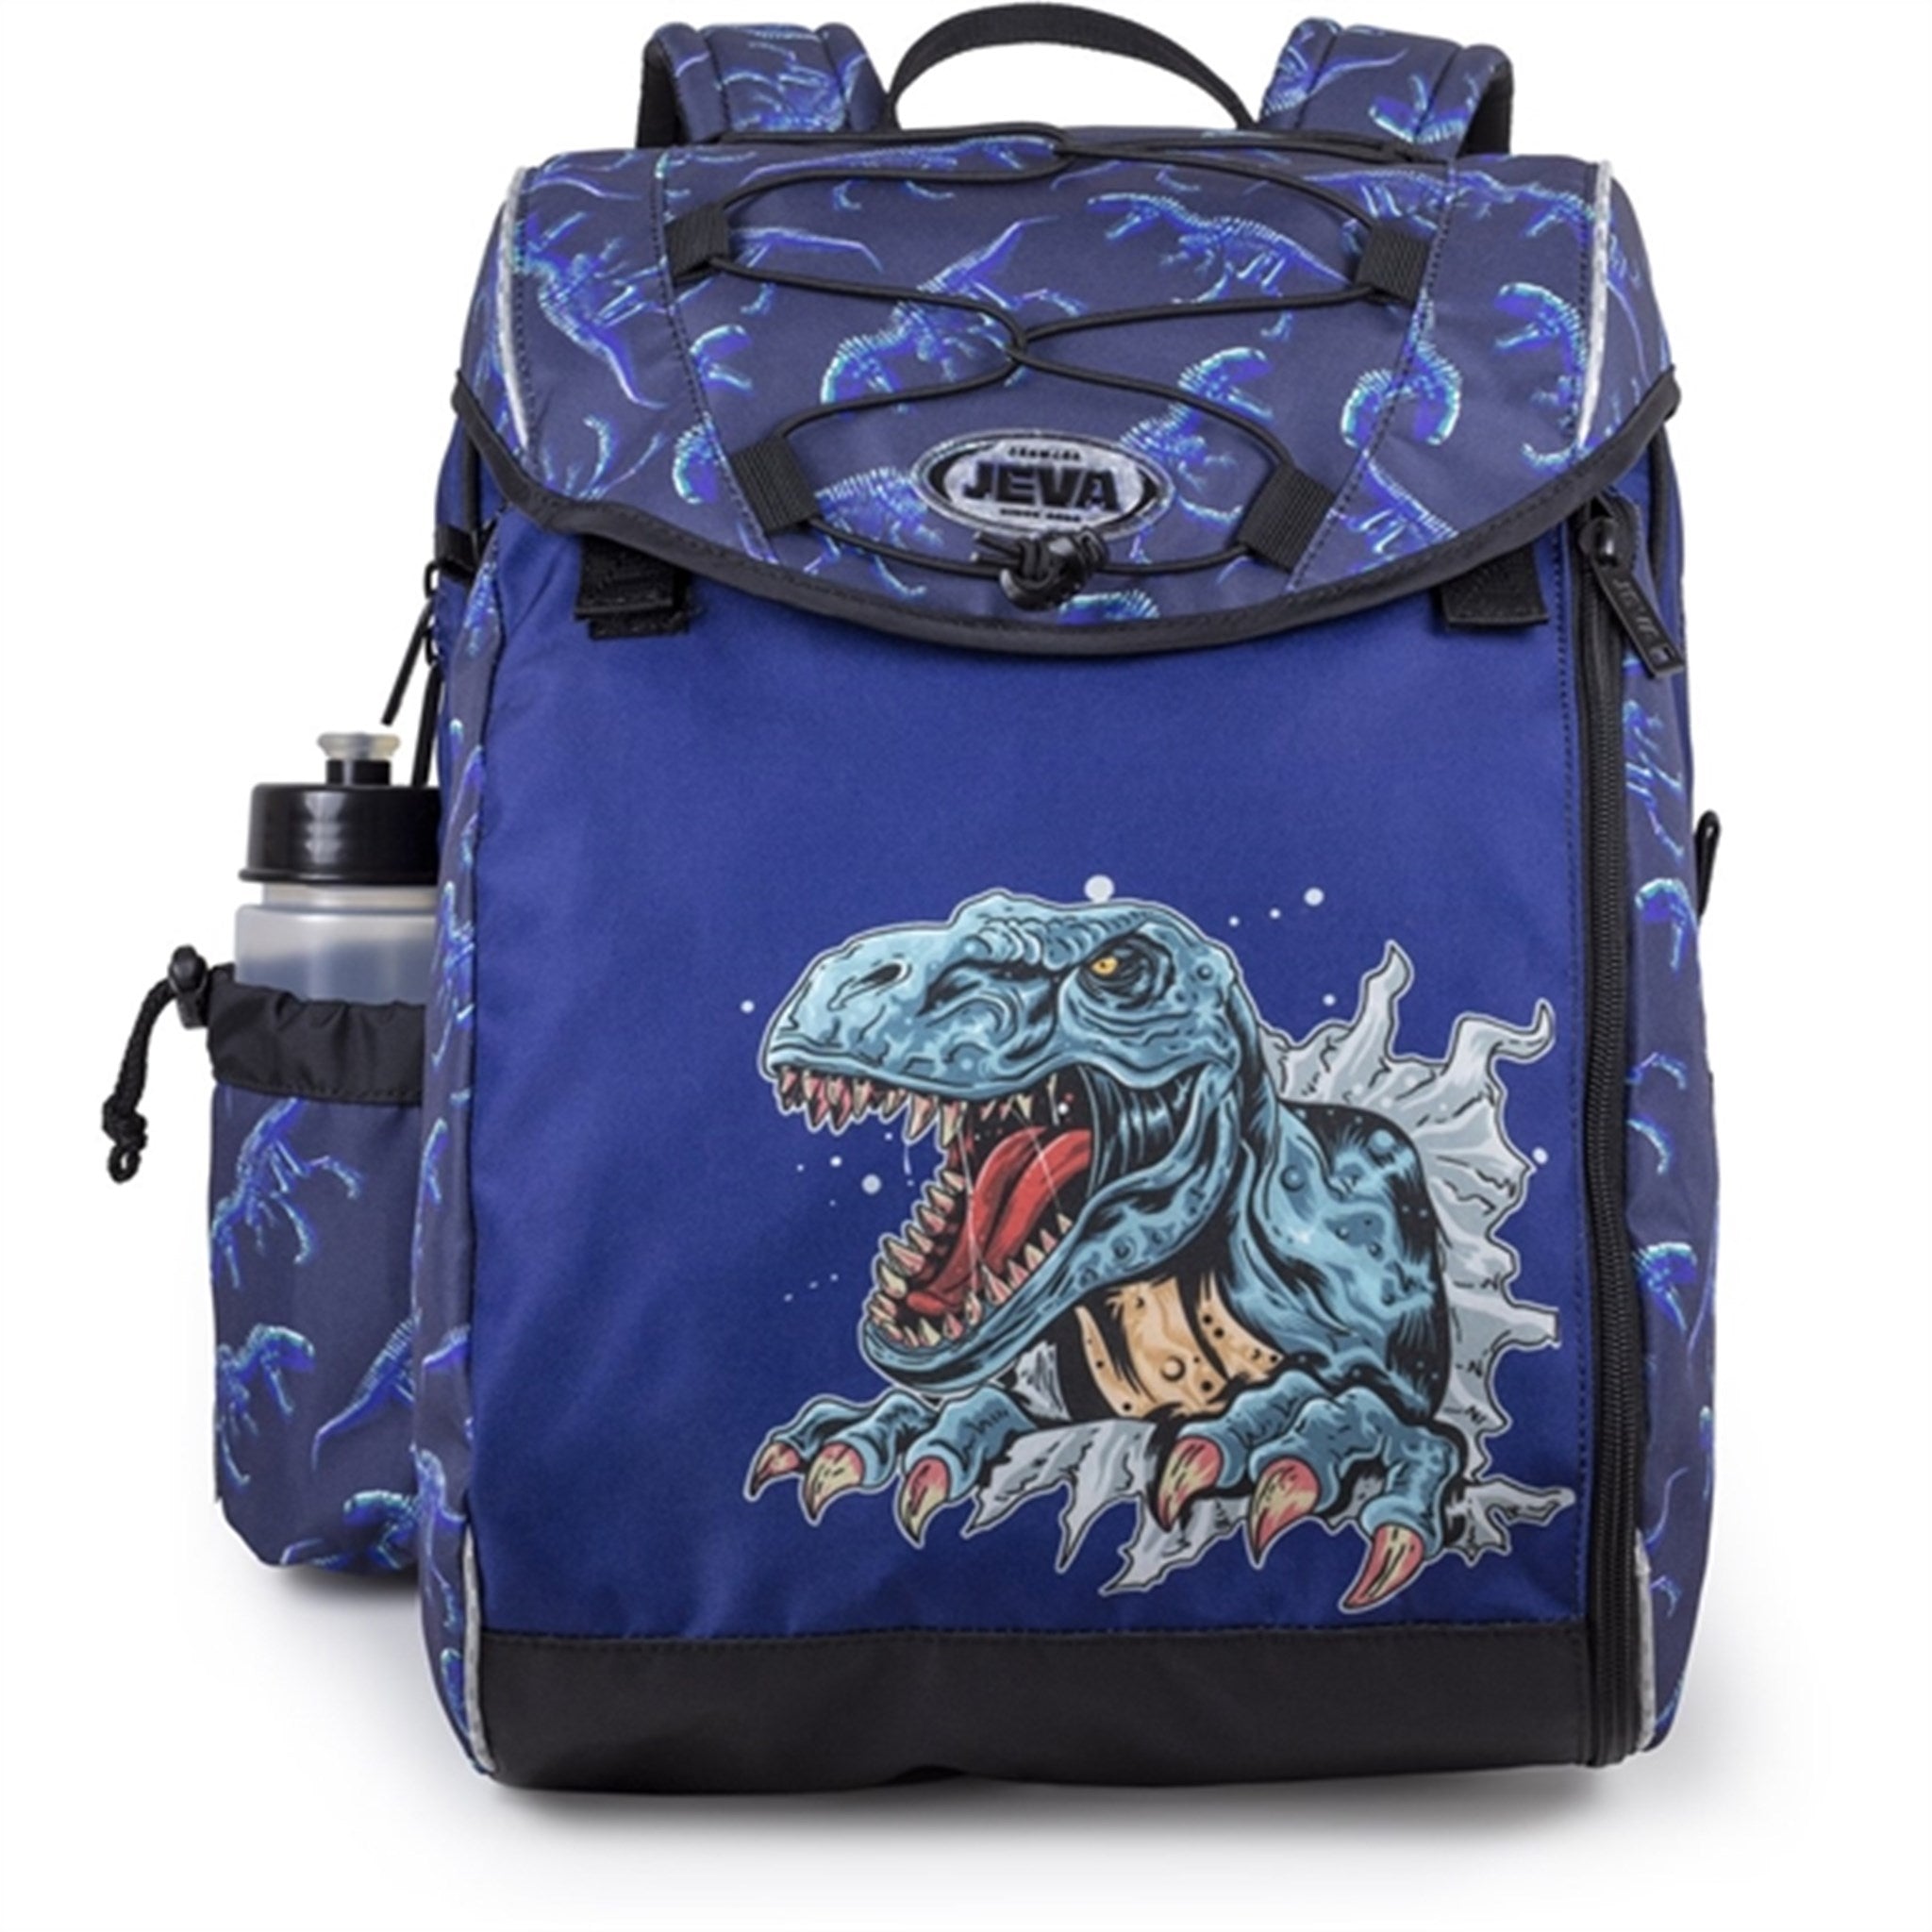 JEVA School Bag Dinosaur 2